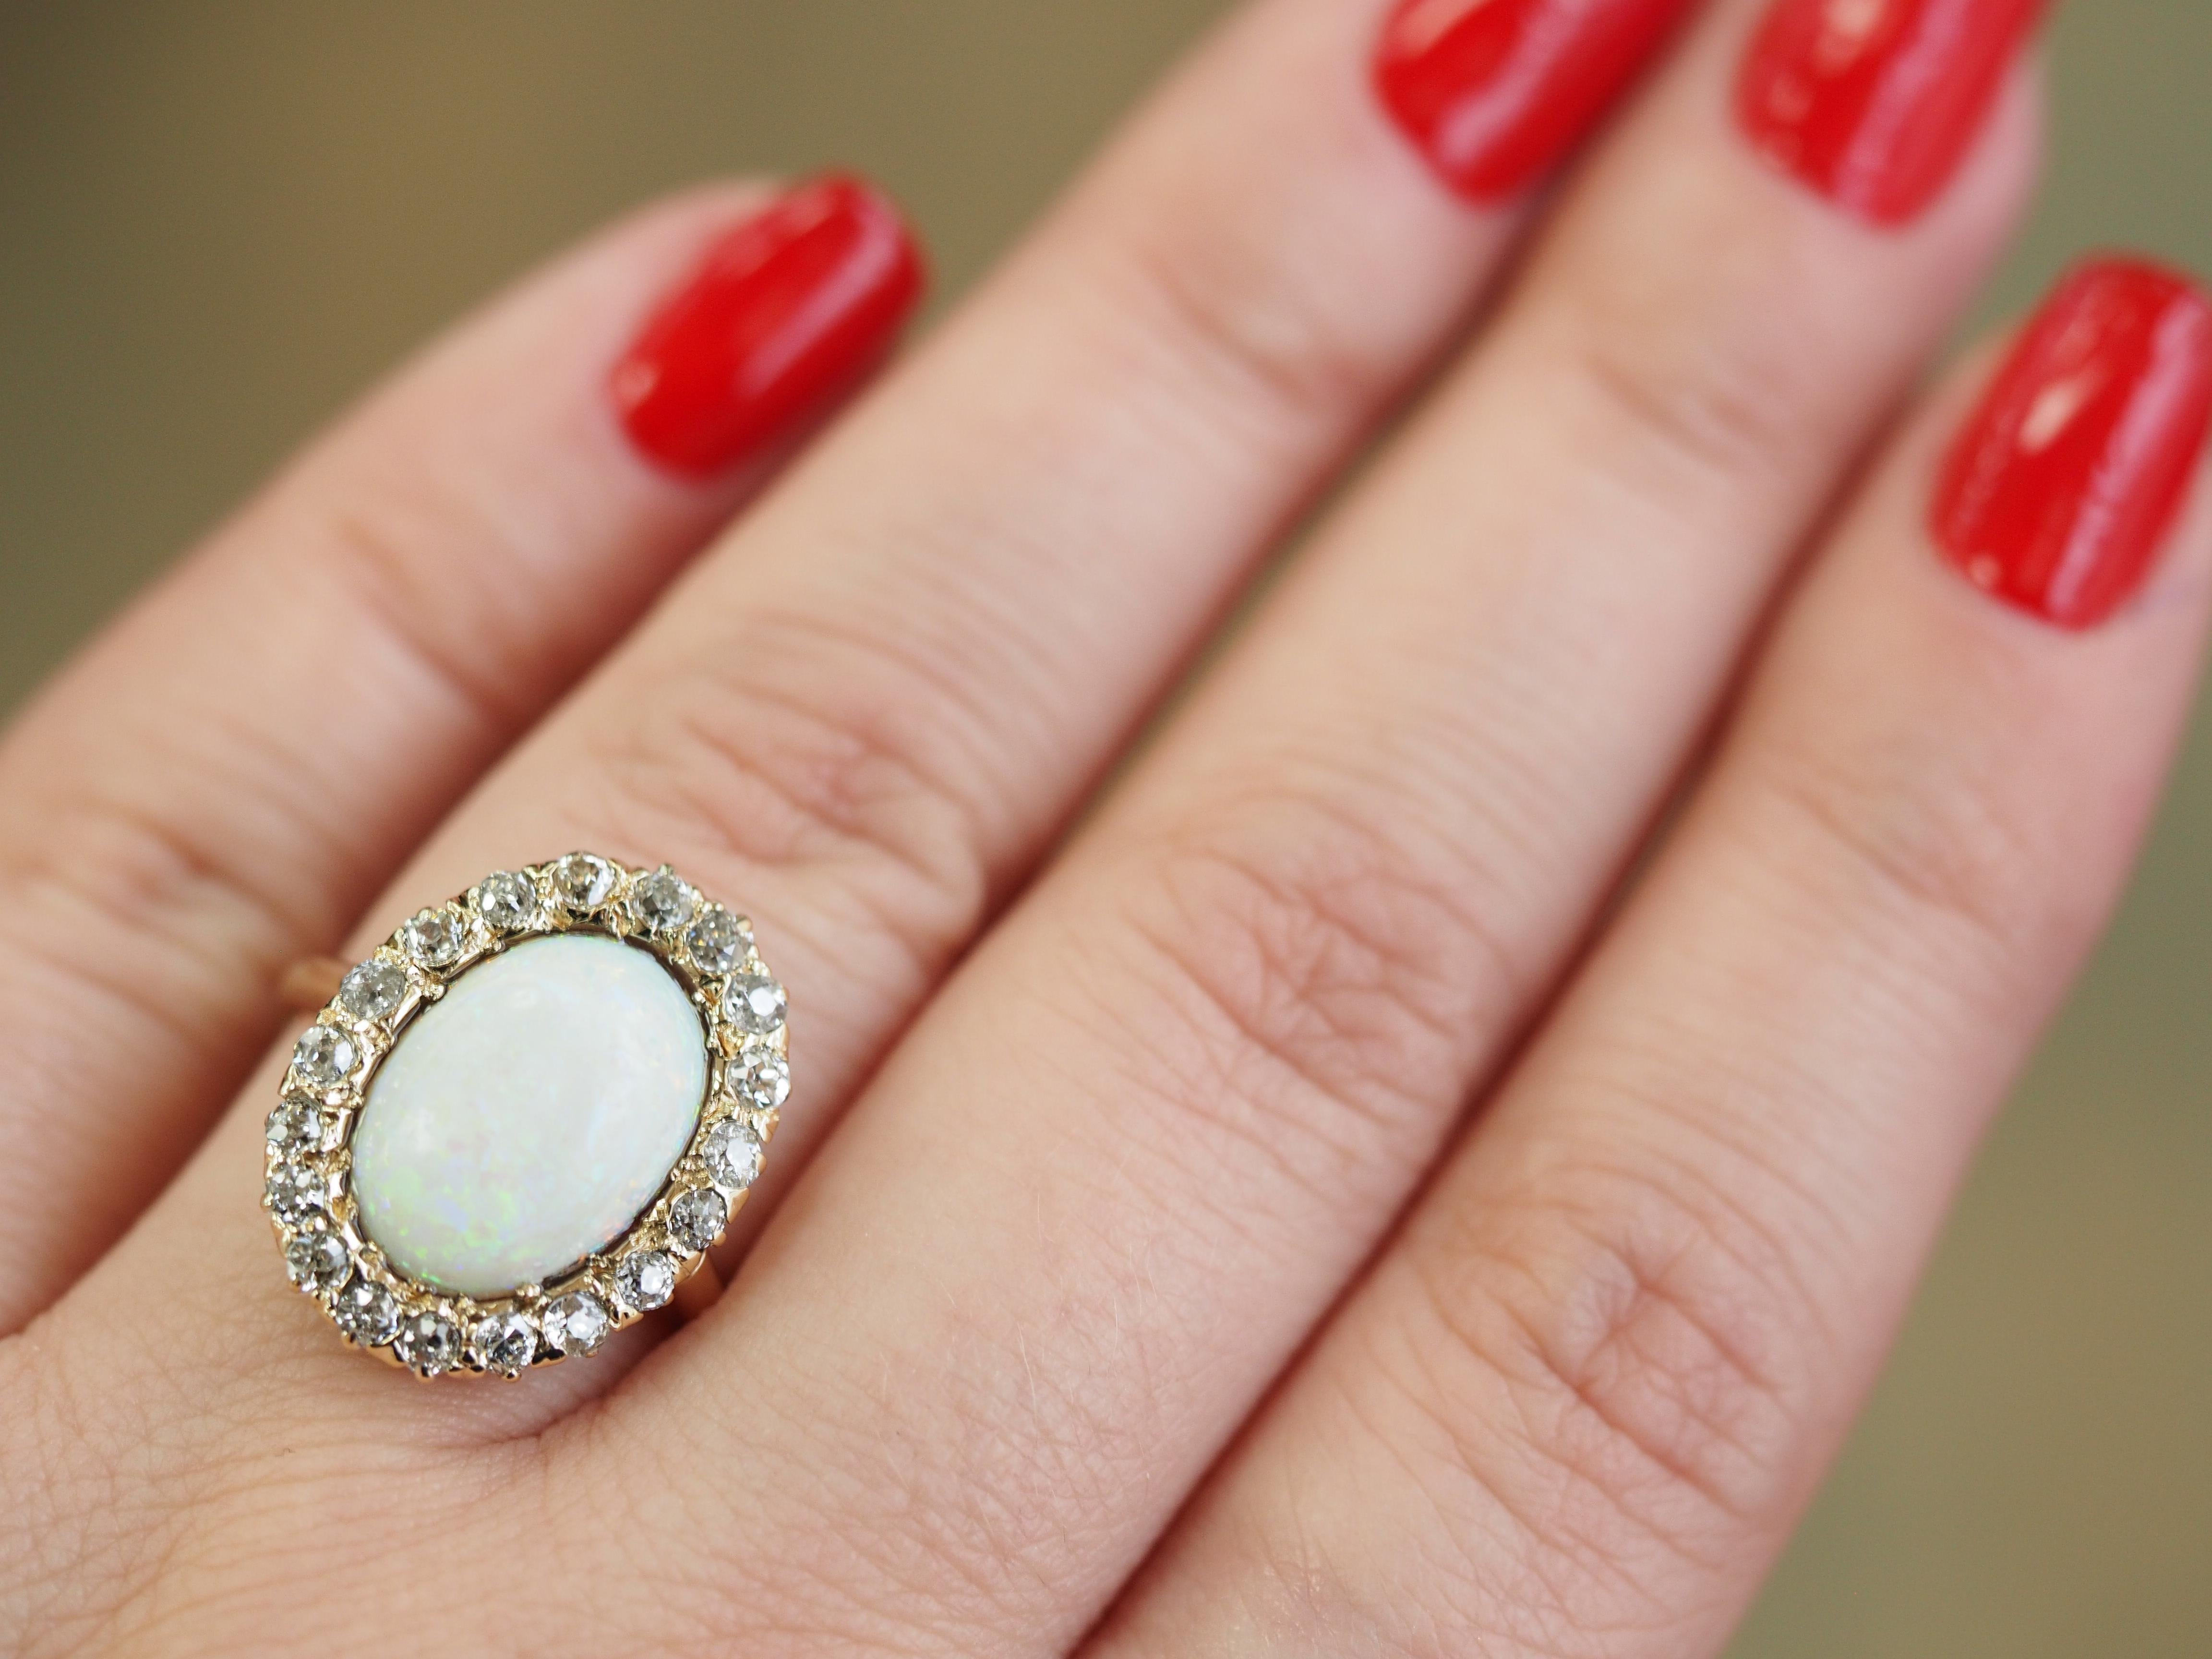  Estate 14K Gelb- und Weißgold Opal und Diamant Cocktail Ring.  Der Ring zeigt einen schönen ovalen Opal, der von einem wellenförmigen Halo aus Diamanten im Rundschliff umgeben ist.  Der Stein ist in eine vierzackige Fassung aus 14-karätigem